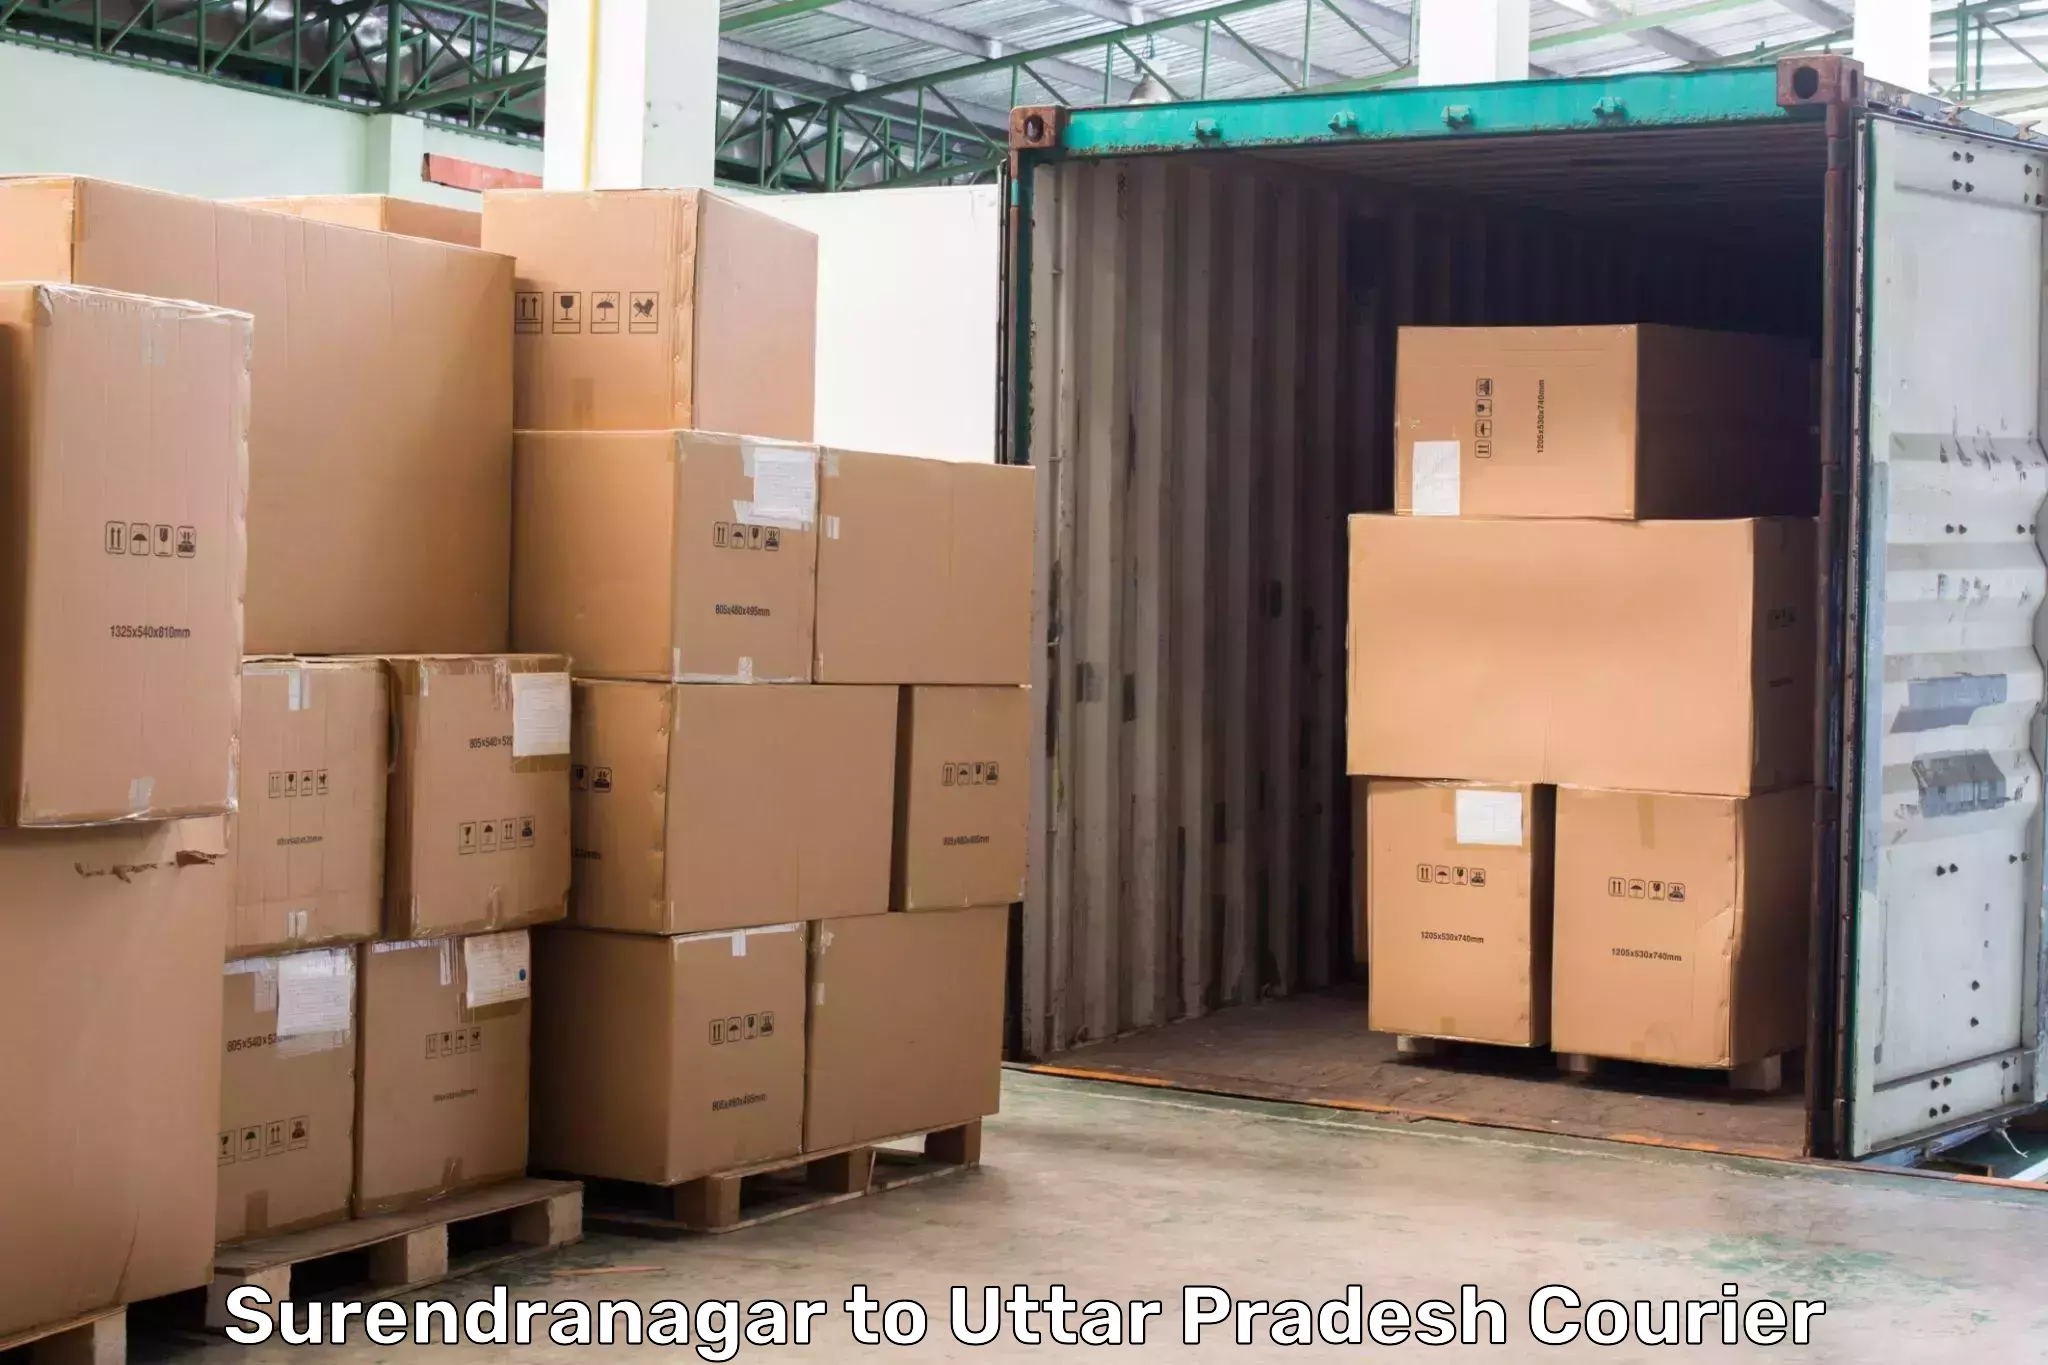 Express logistics providers Surendranagar to Uttar Pradesh